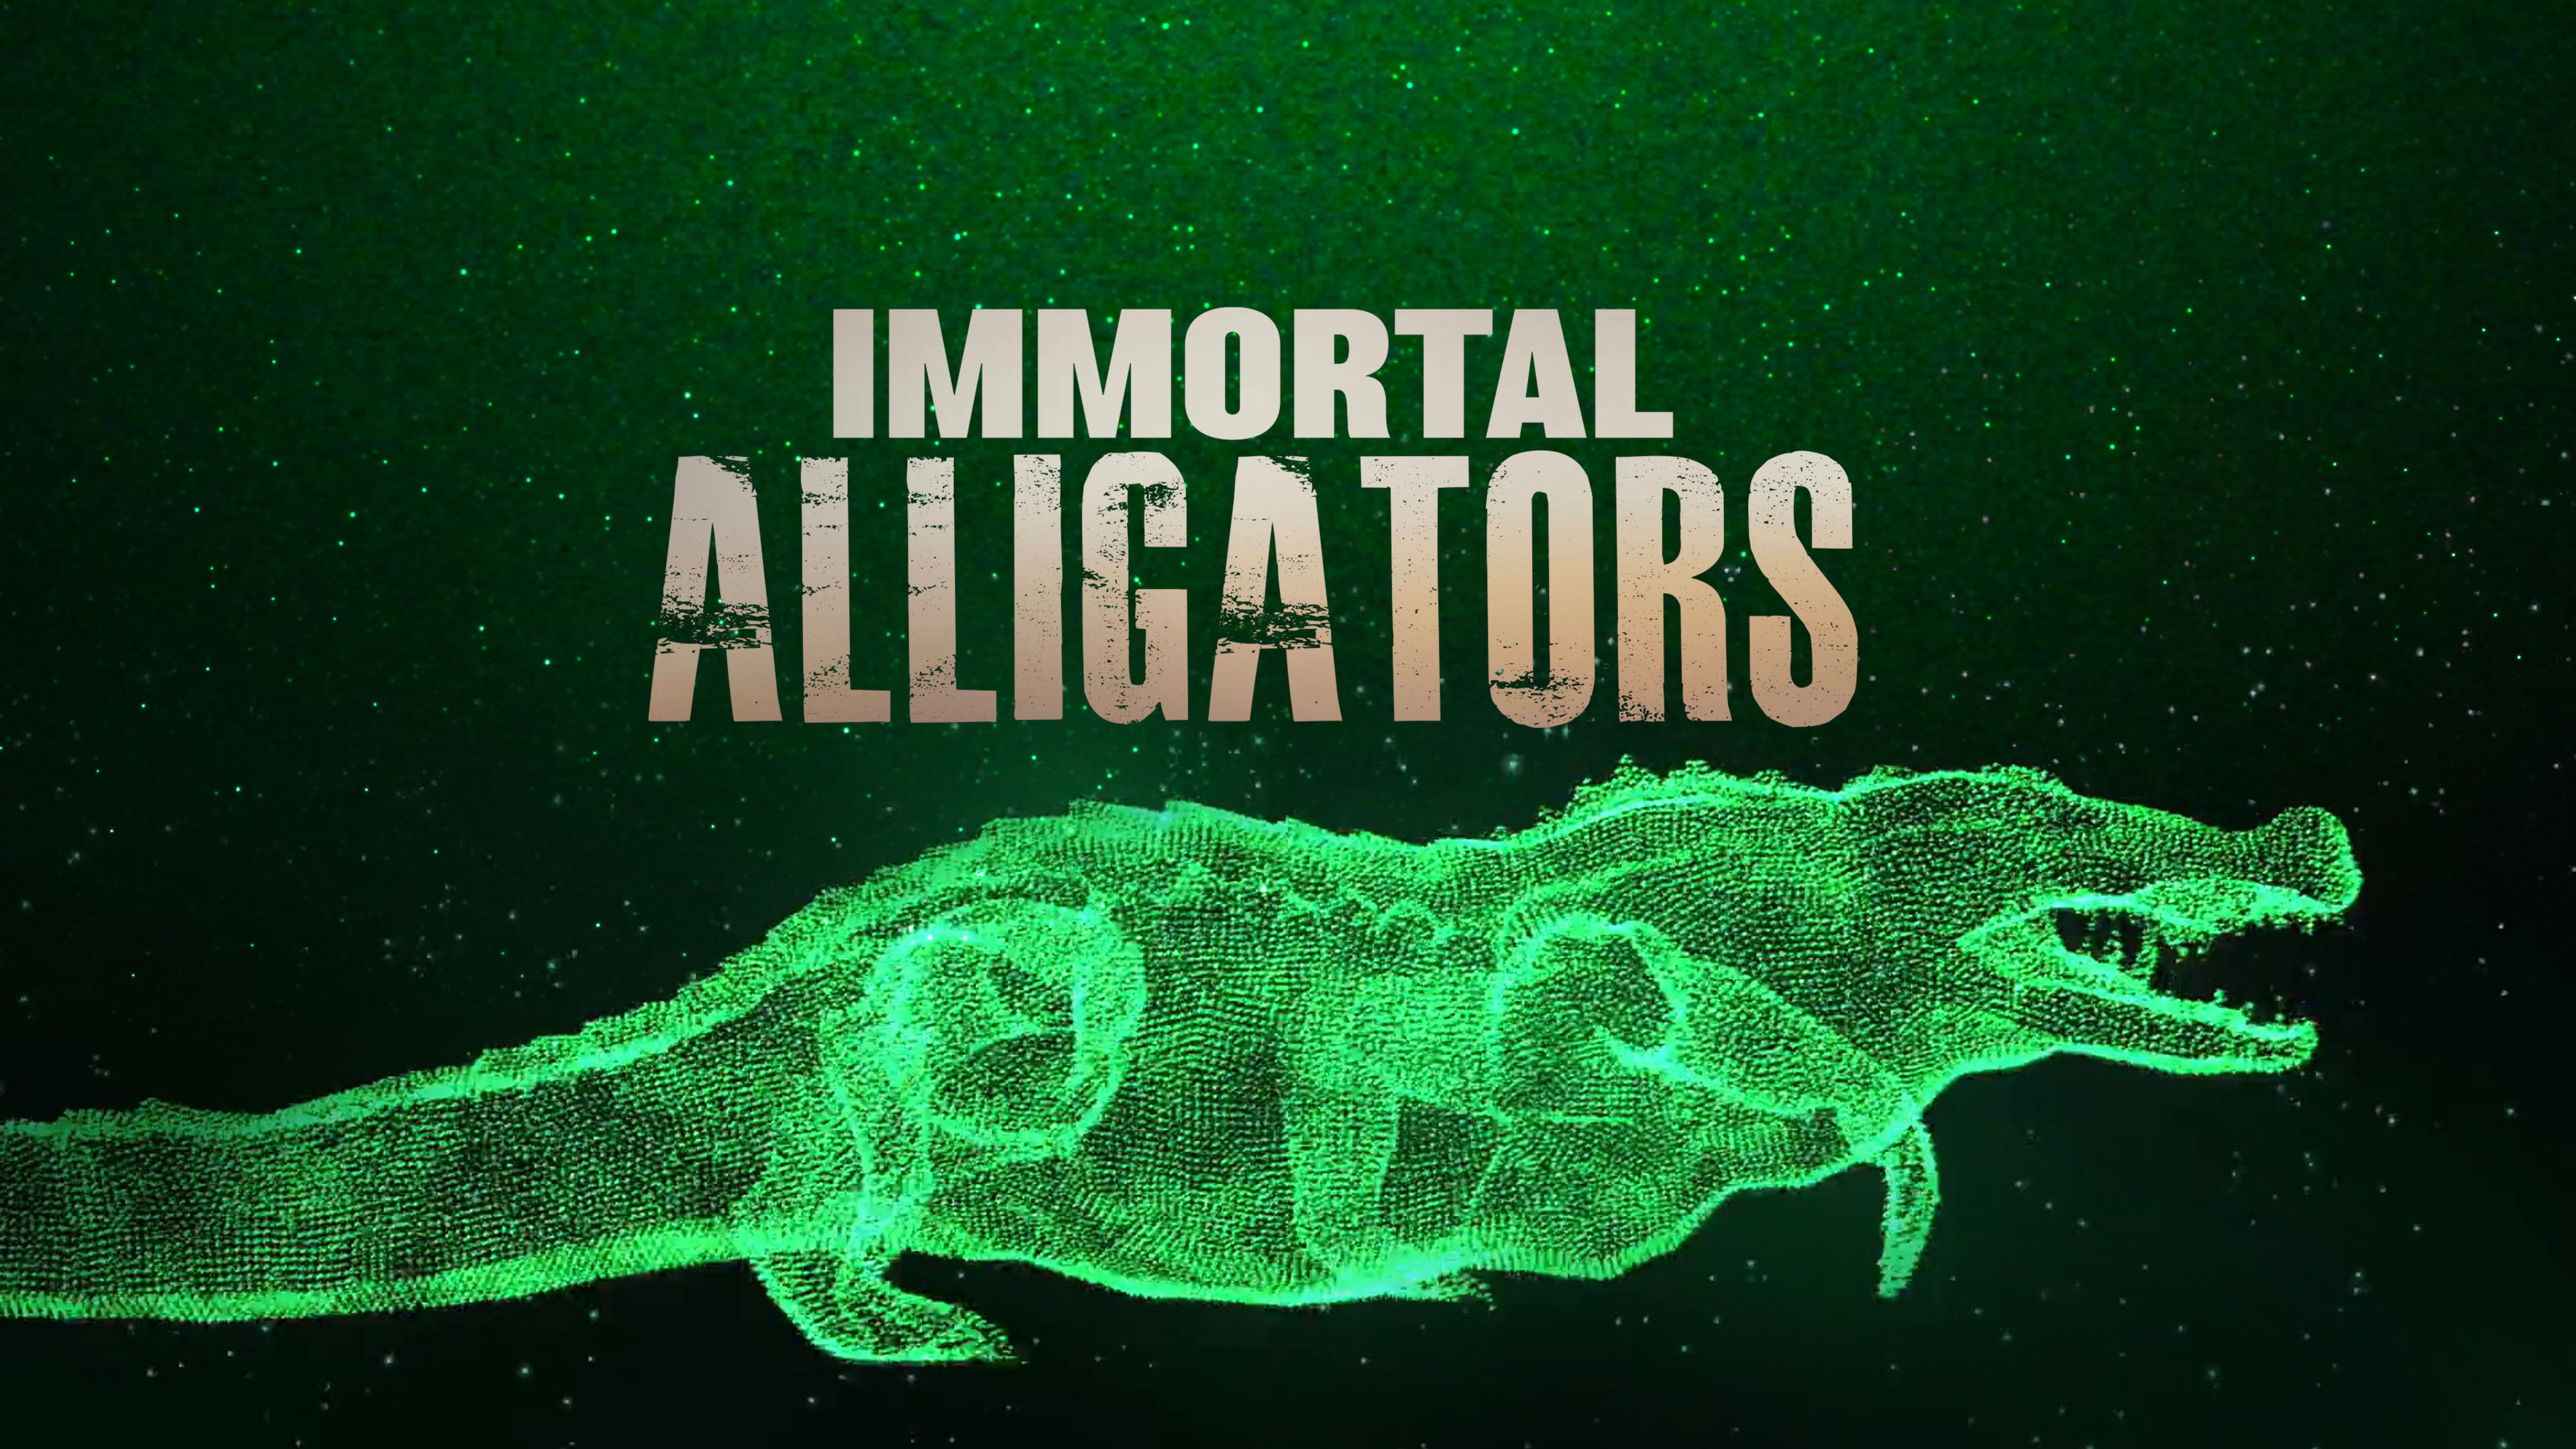 Immortal Alligators